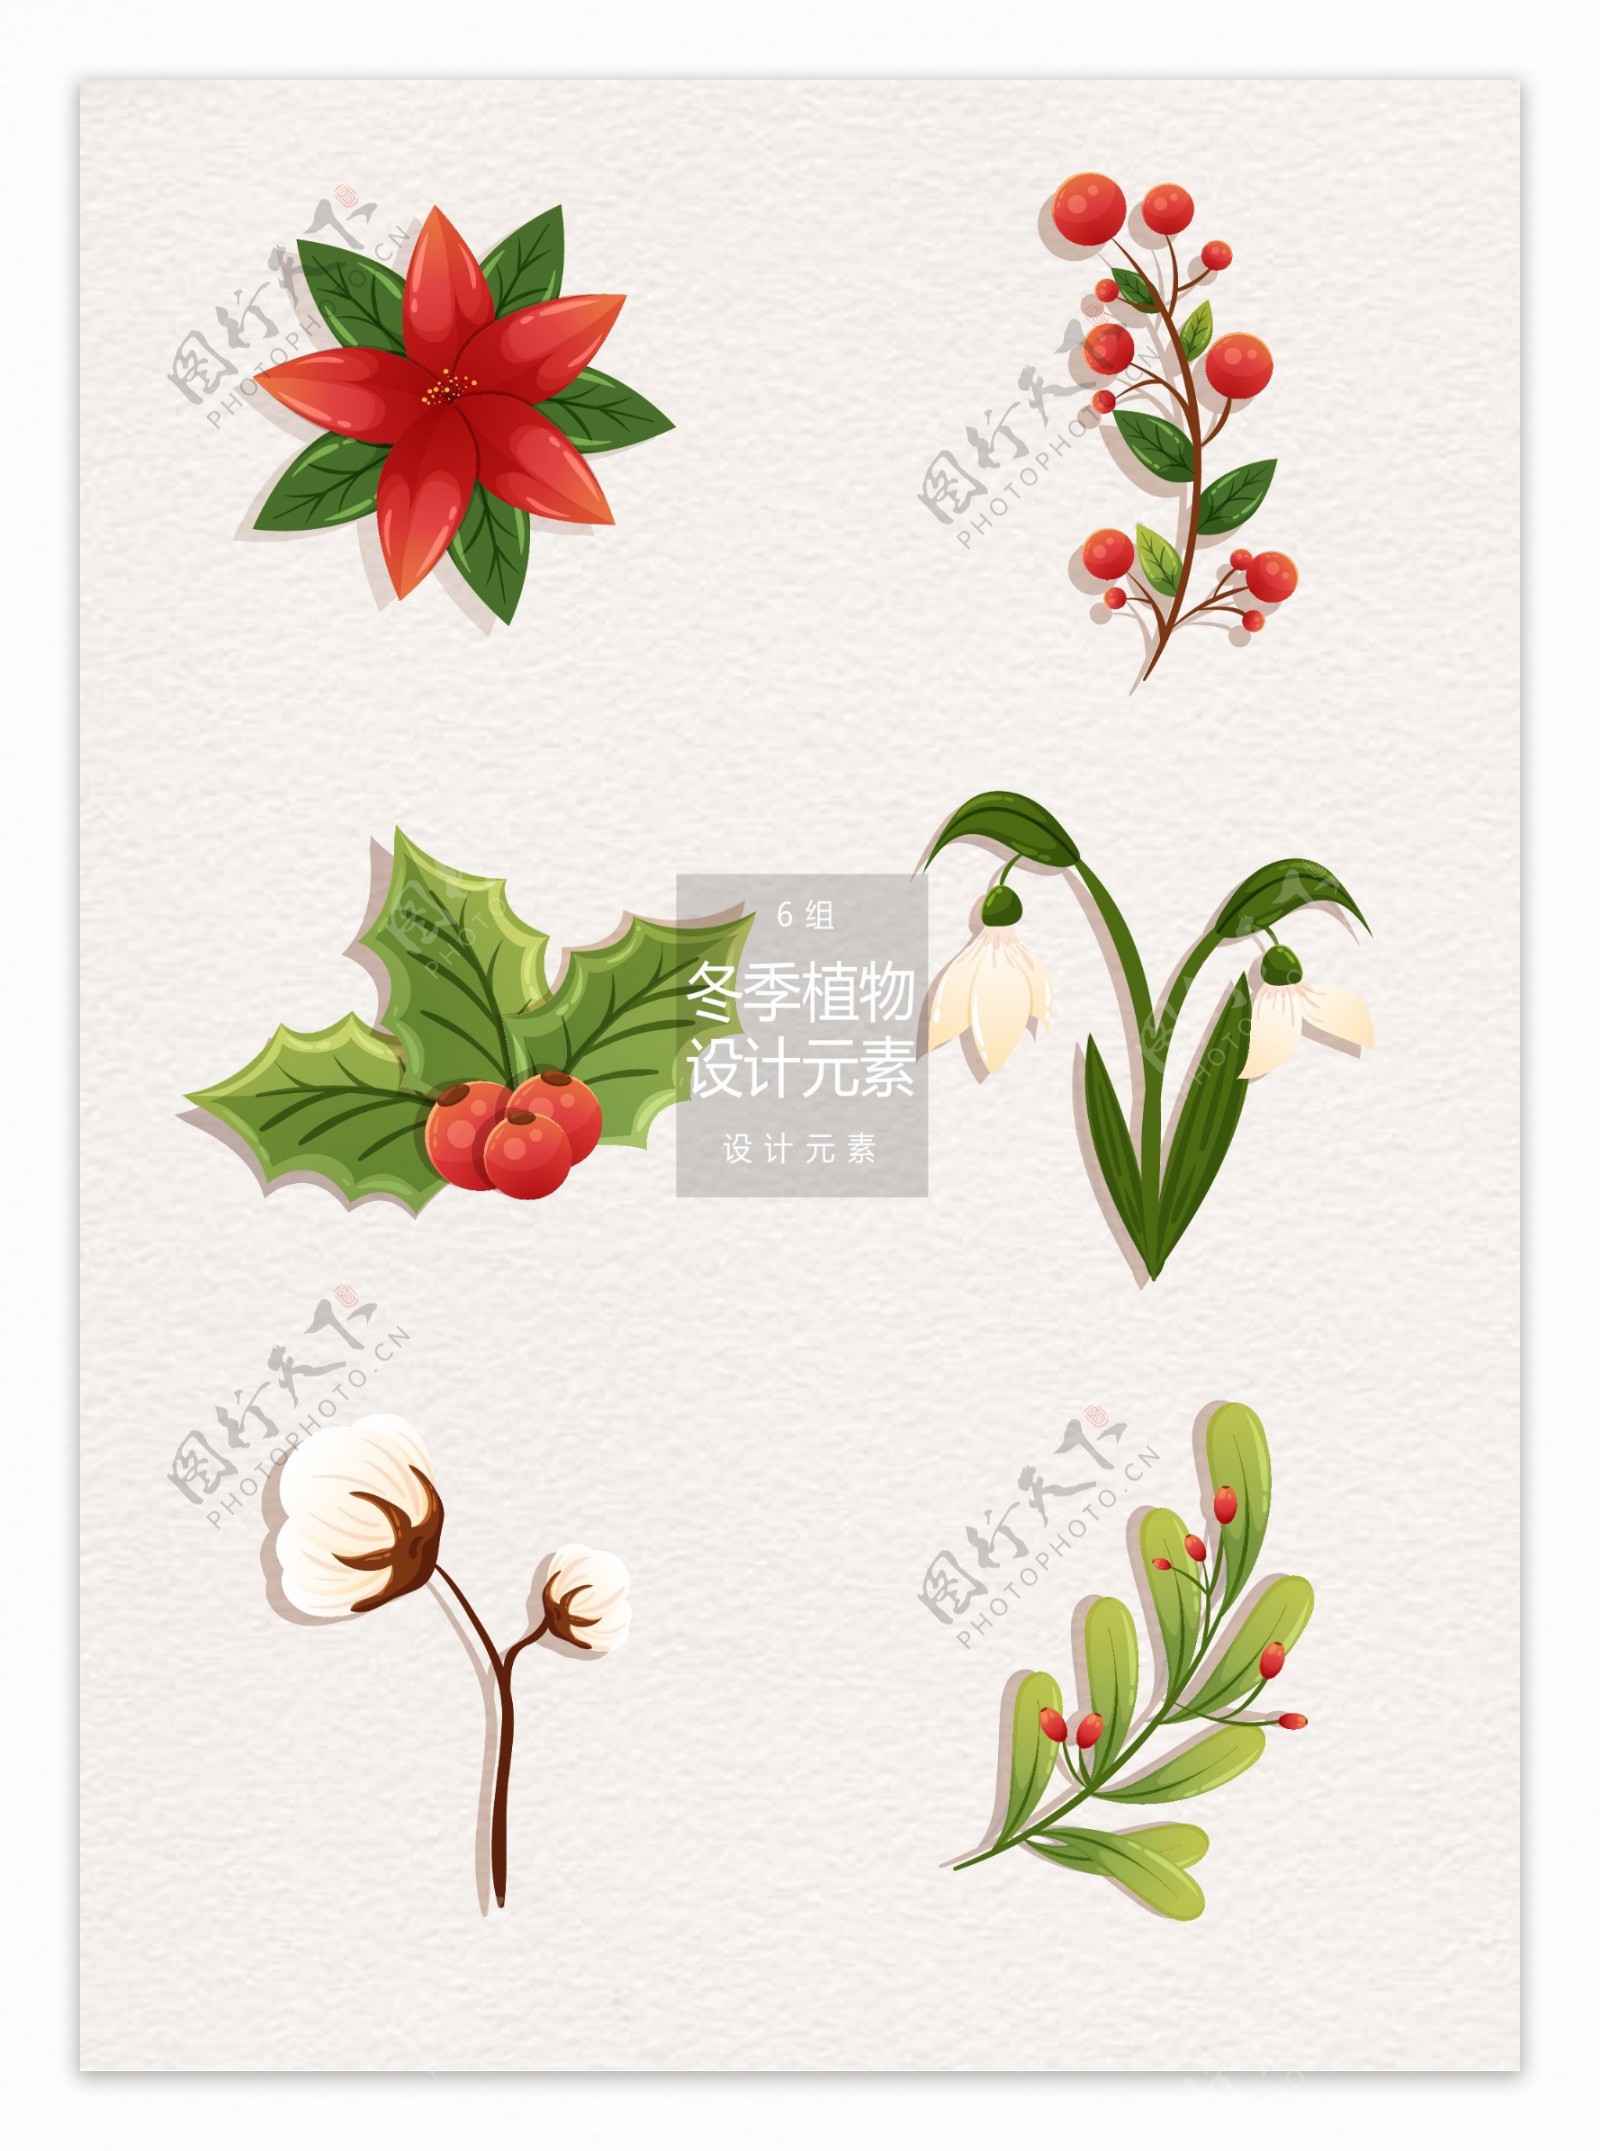 冬季圣诞植物装饰设计元素